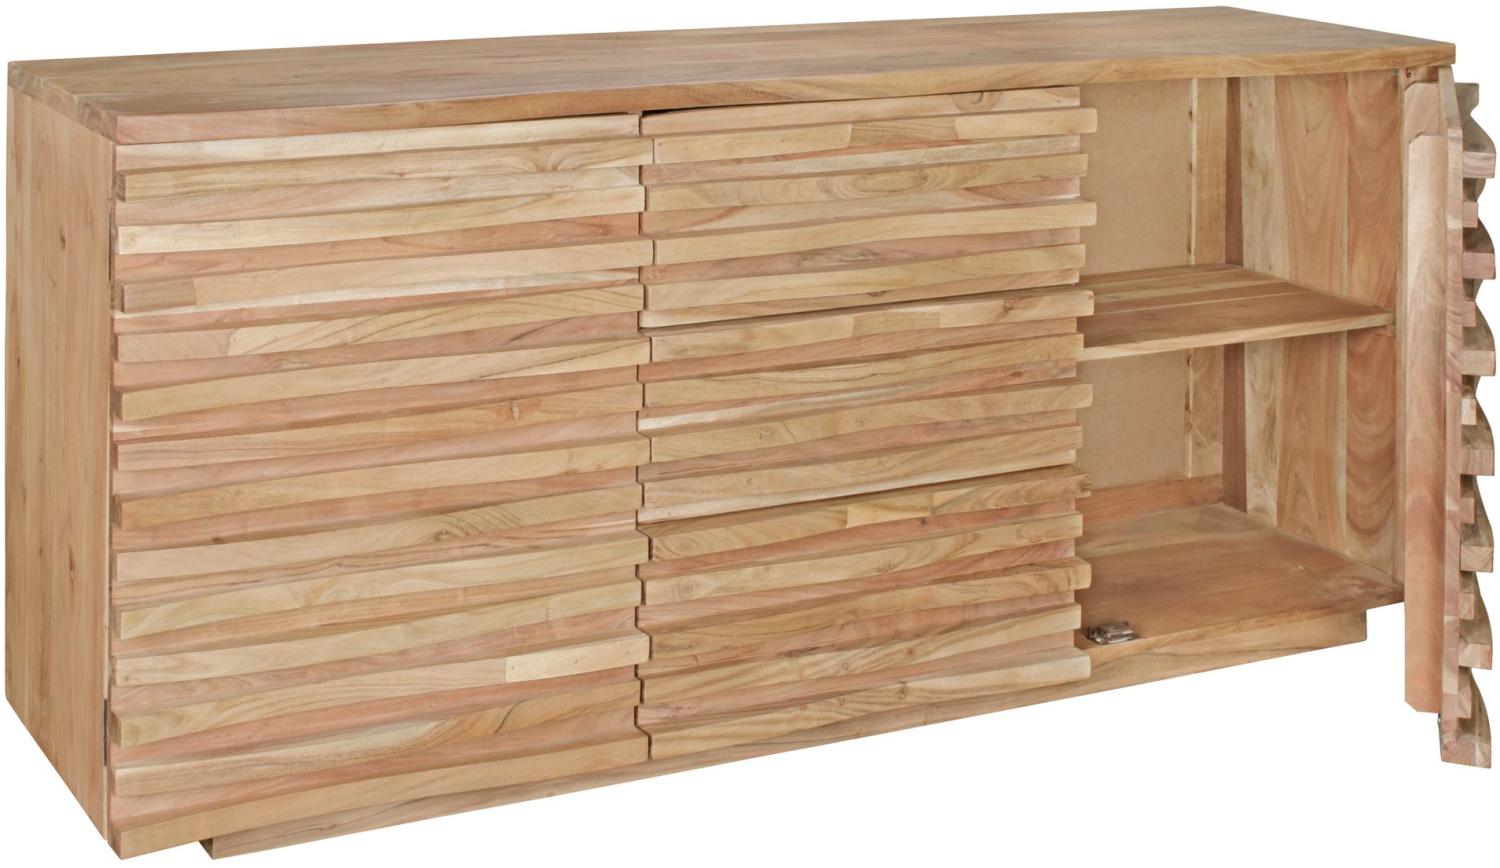 KADIMA DESIGN Sideboard aus Akazien-Massivholz mit Natur-Baumkante im Landhaus-Stil, 160 x 75 x 43 cm - Stilvolle Anrichte mit Schubladen und Türen. Bild 1